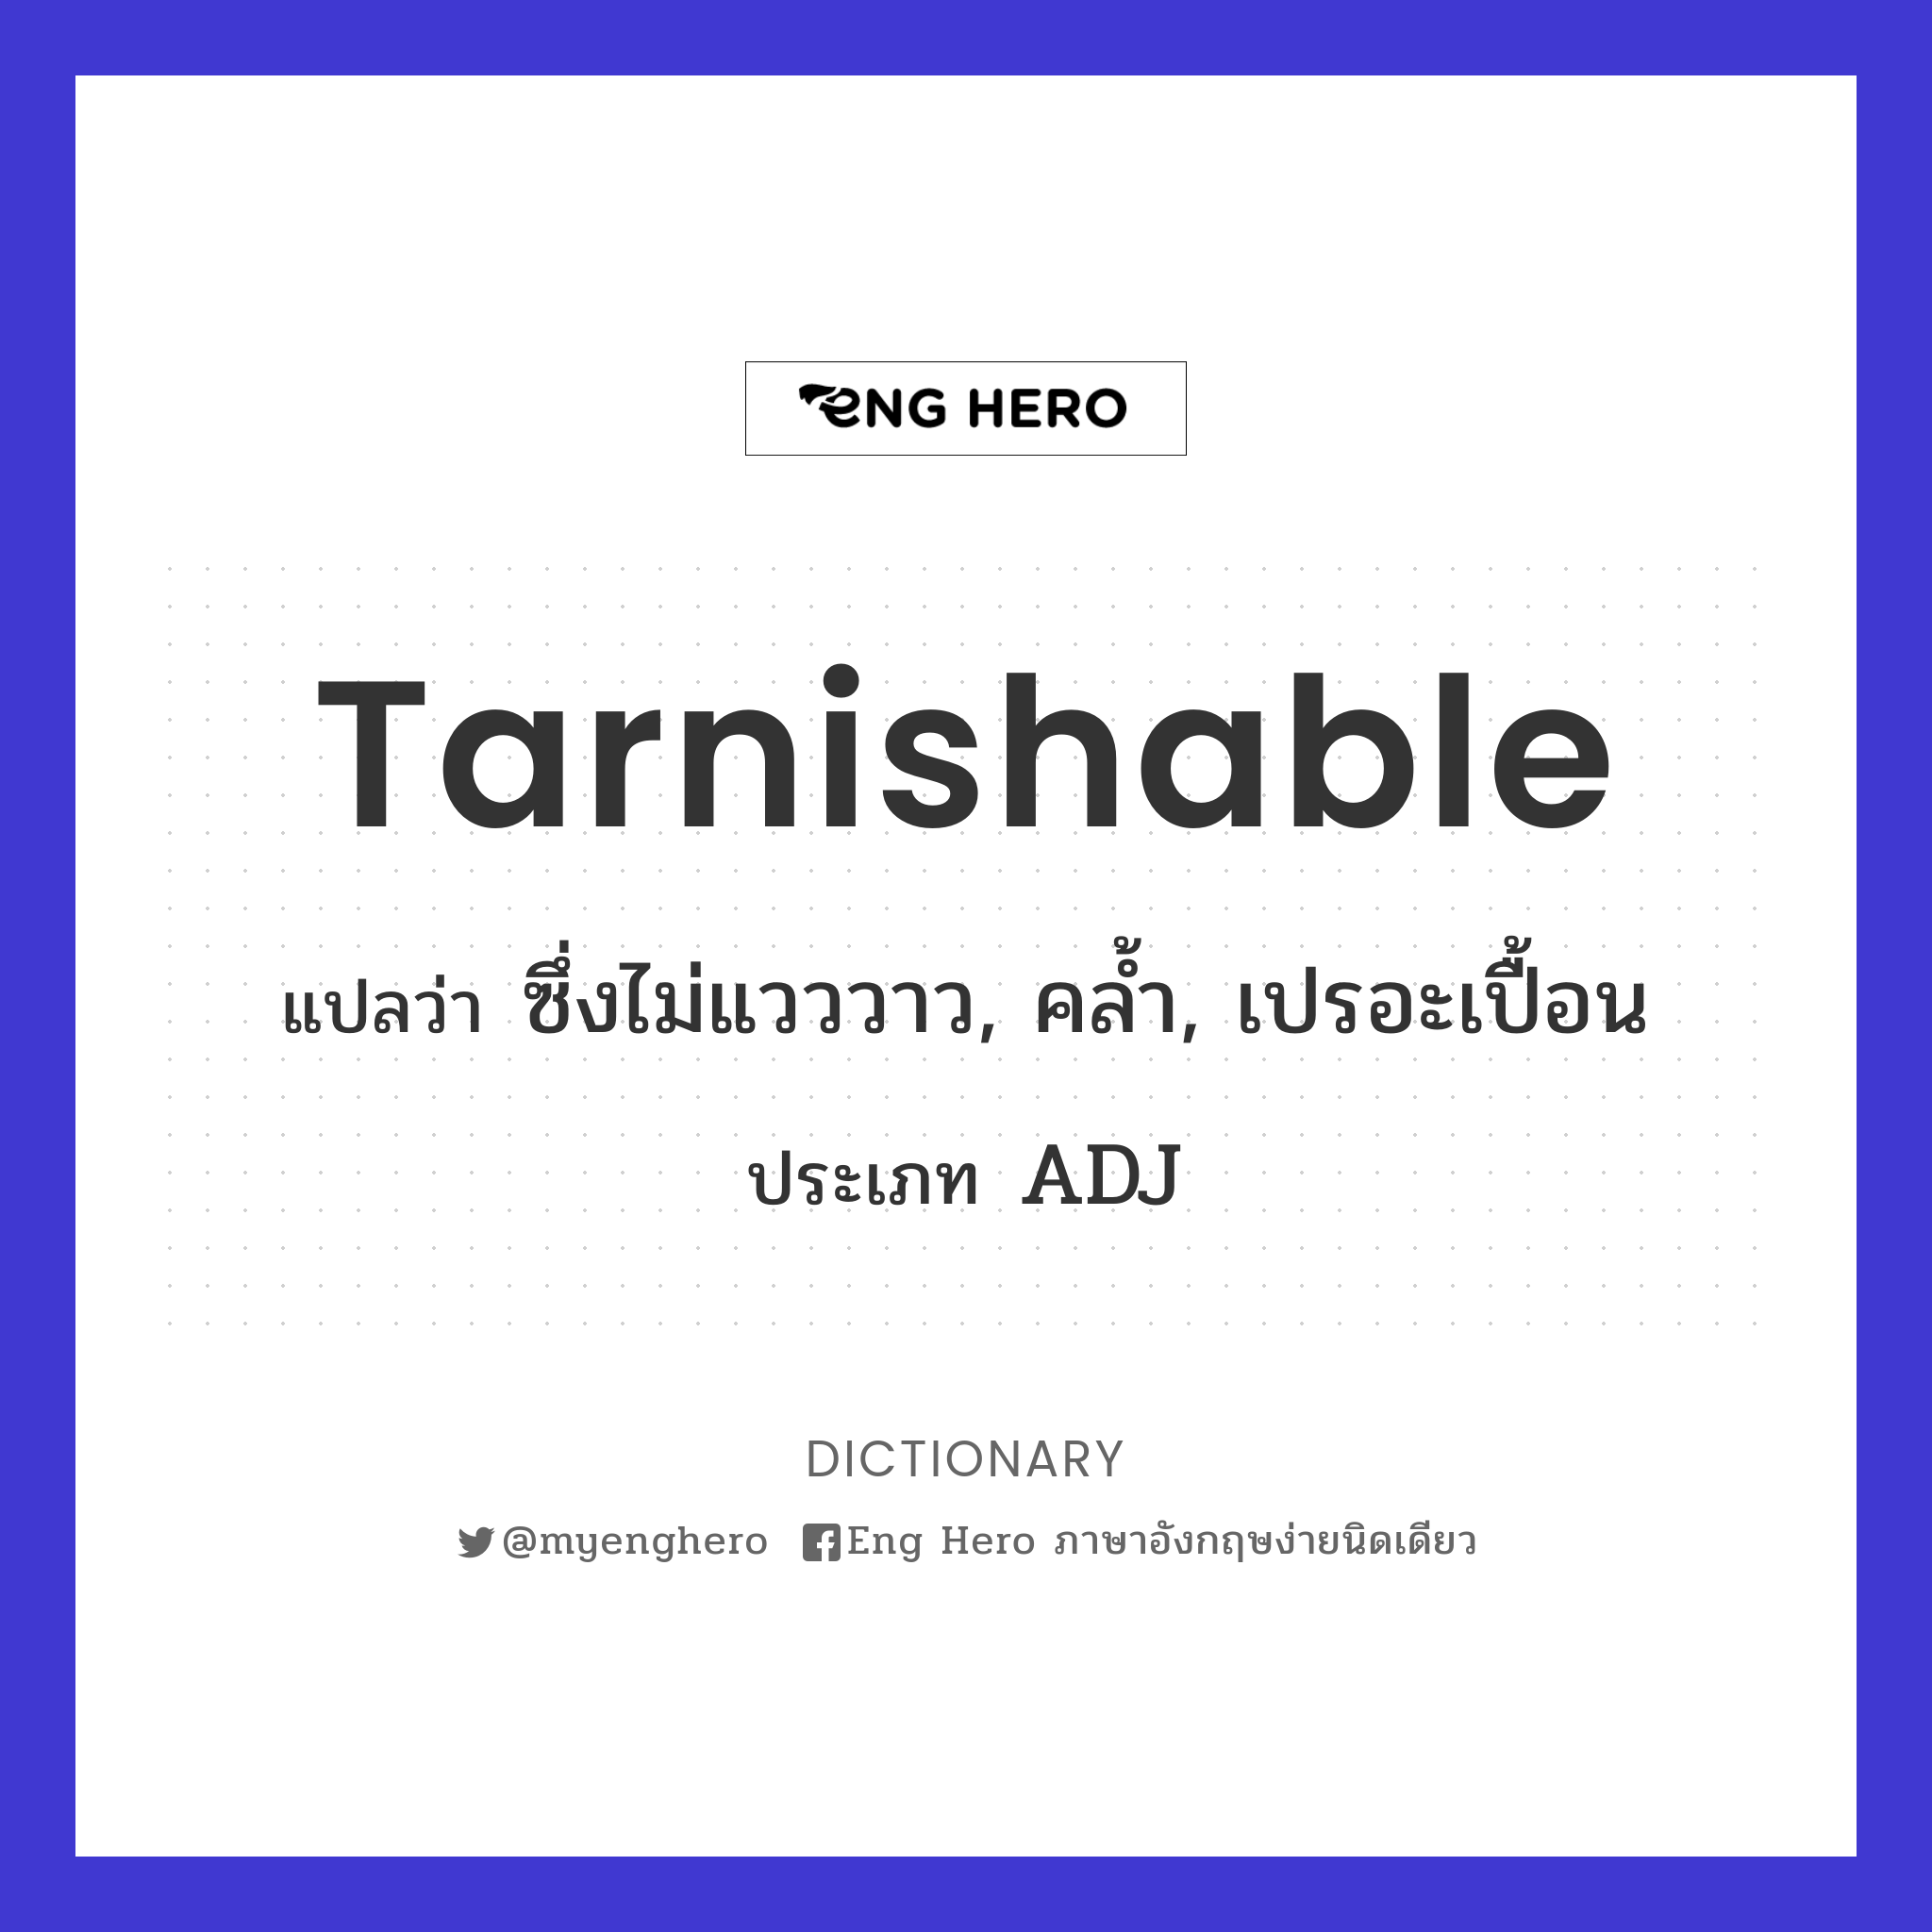 tarnishable